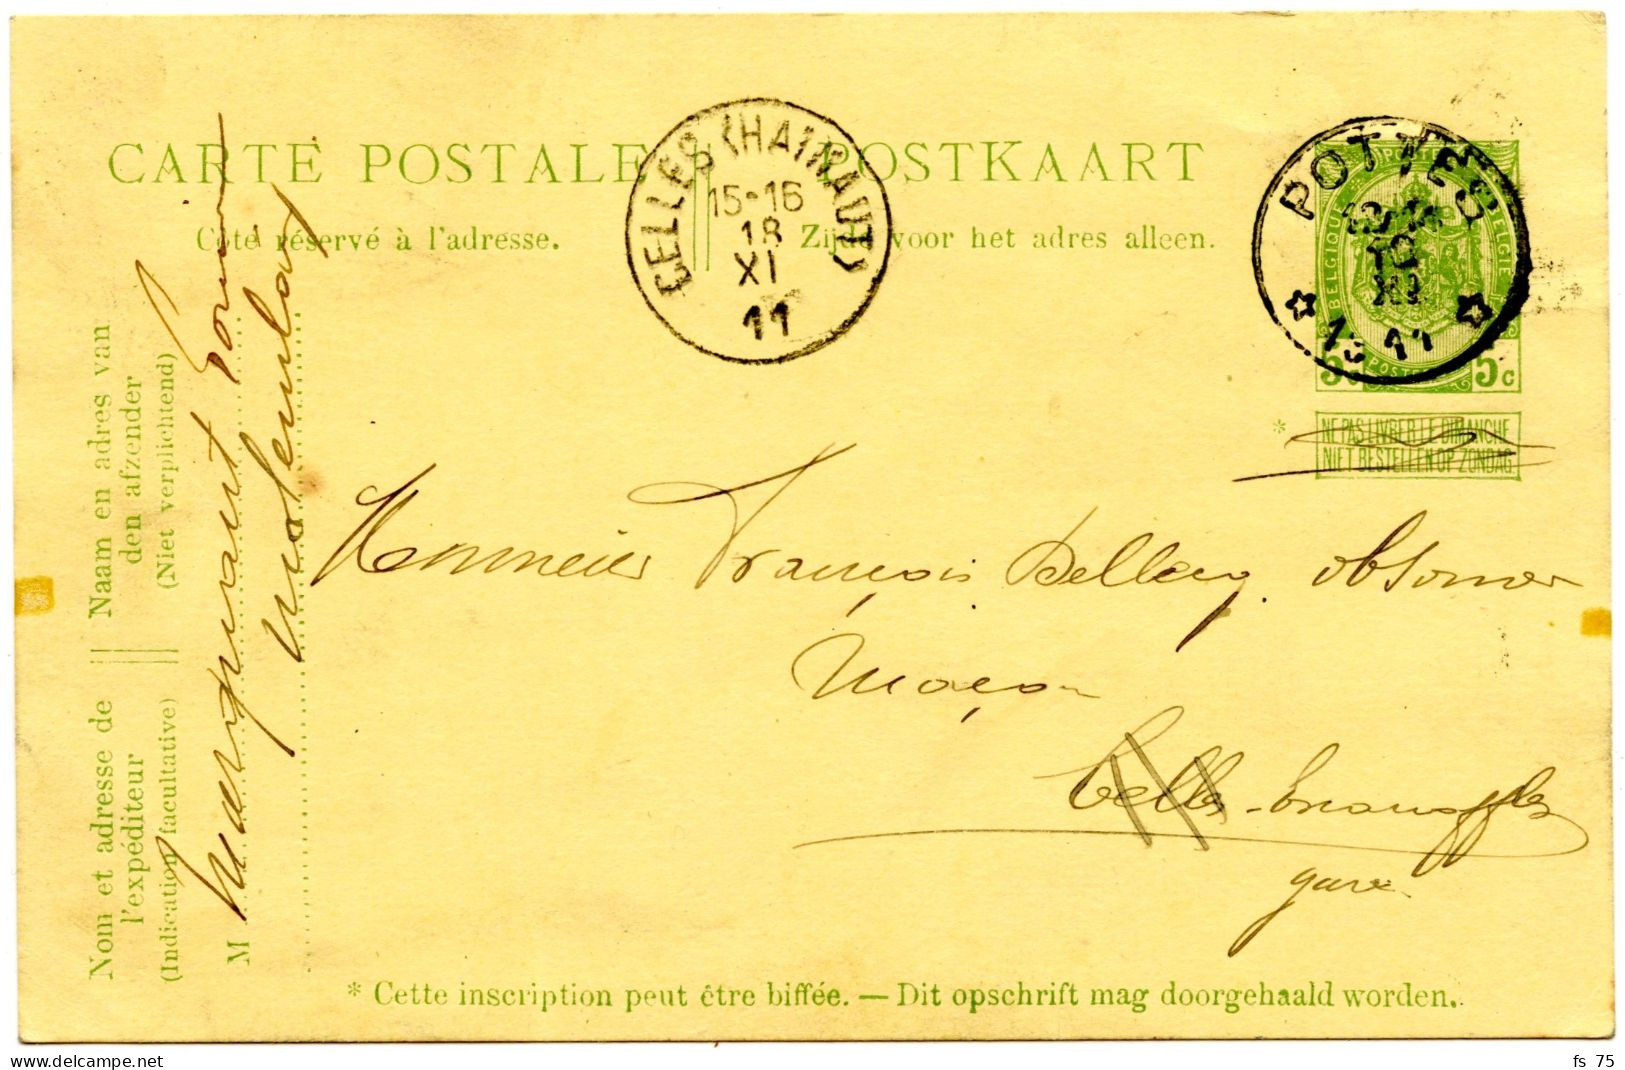 BELGIQUE - SIMPLE CERCLE RELAIS A ETOILES POTTES SUR ENTIER CARTE POSTALE 5C ARMOIRIES, 1911 - Postmarks With Stars